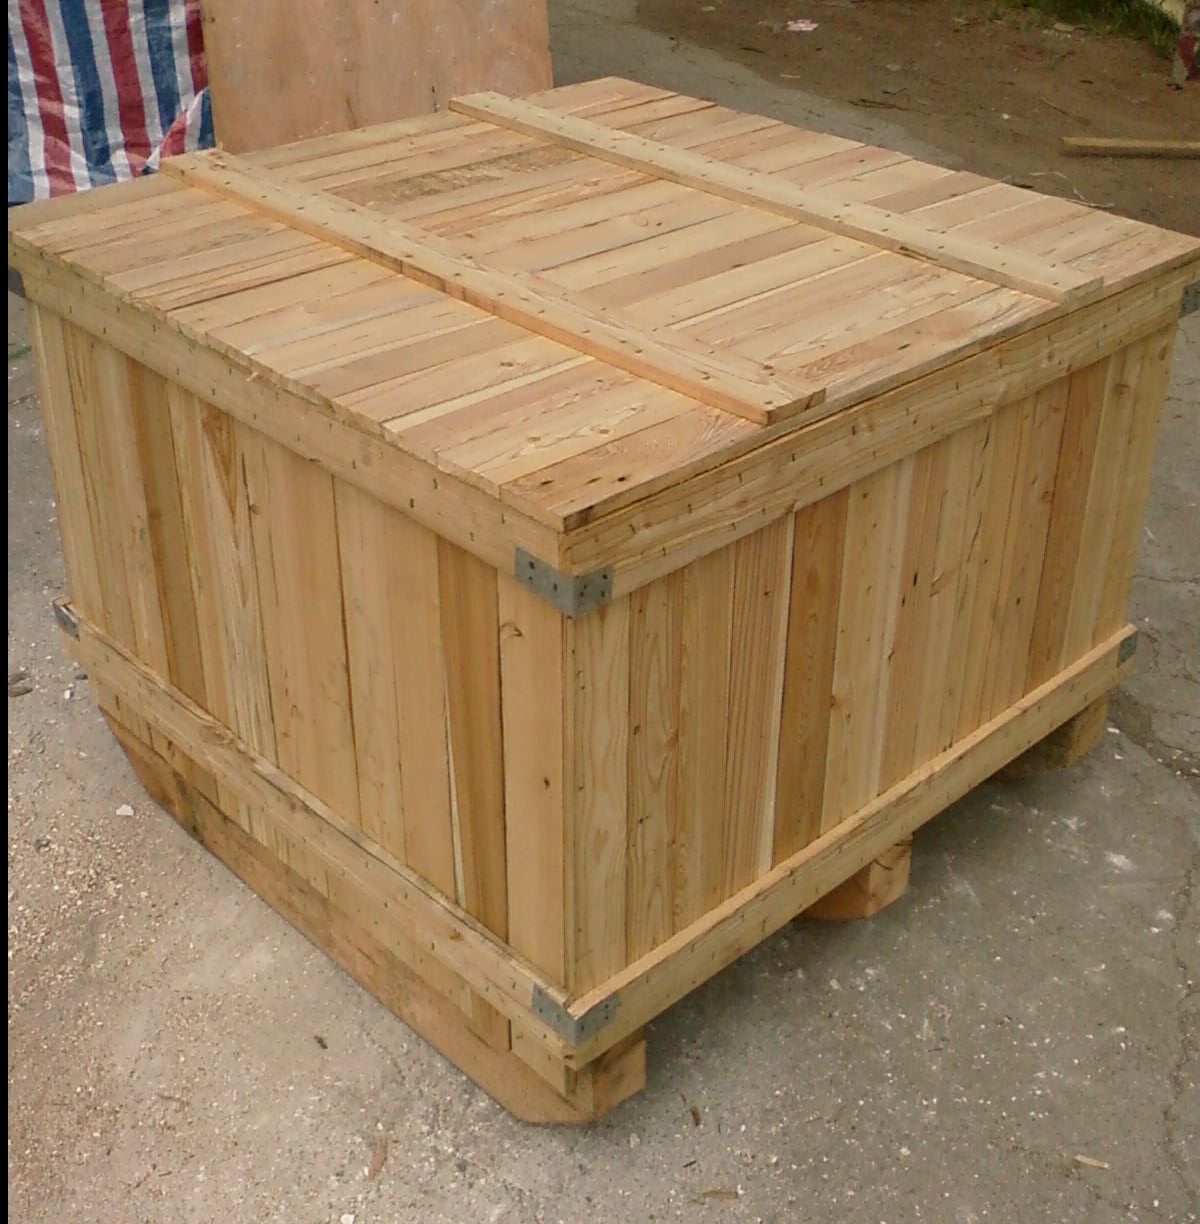 木制包装箱在国际贸易中必须在出运前对木质包装物进行除害处理